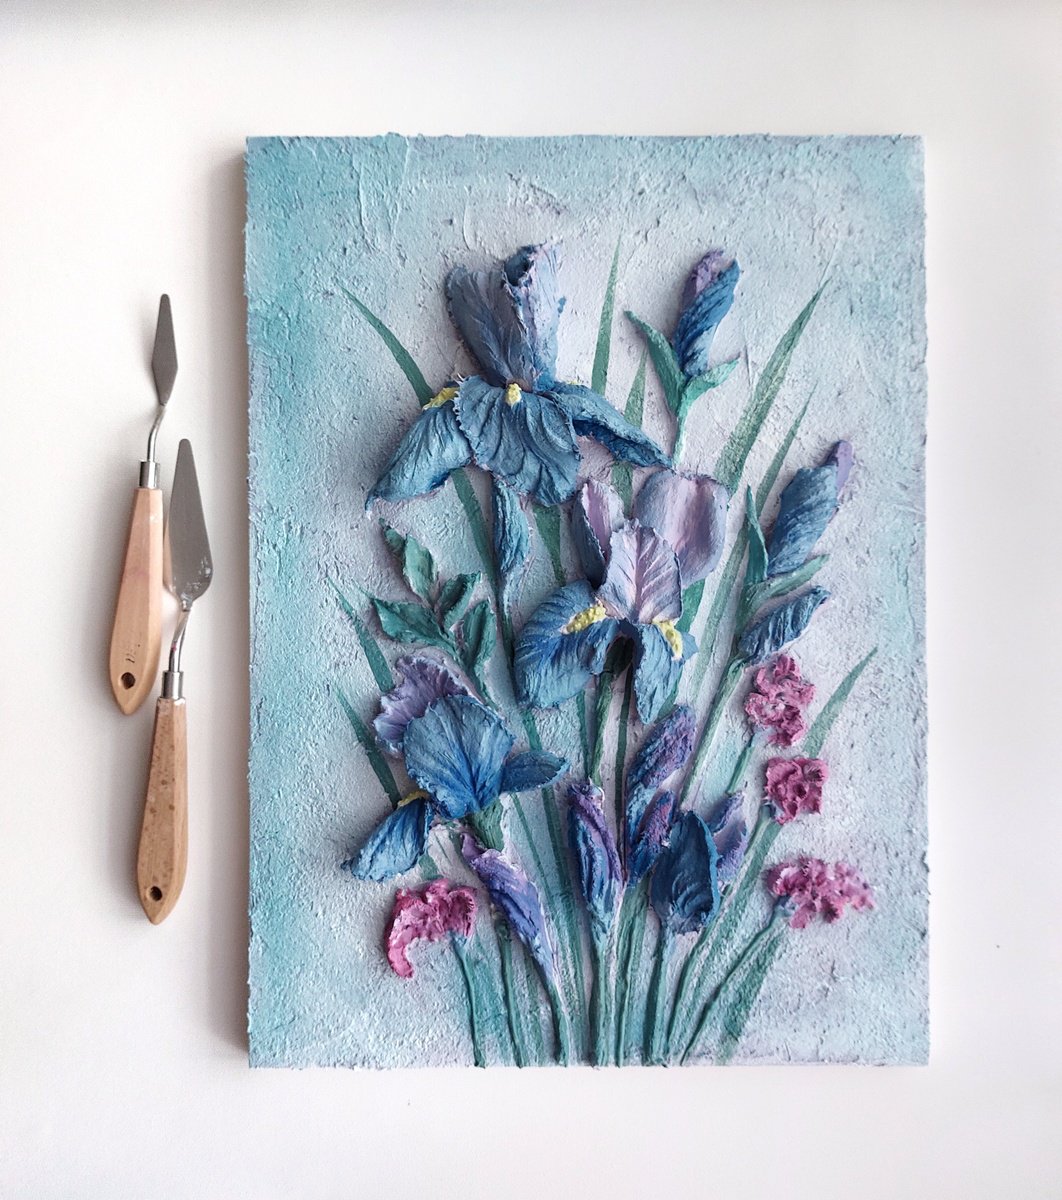 Irises by Svitlana Brazhnikova